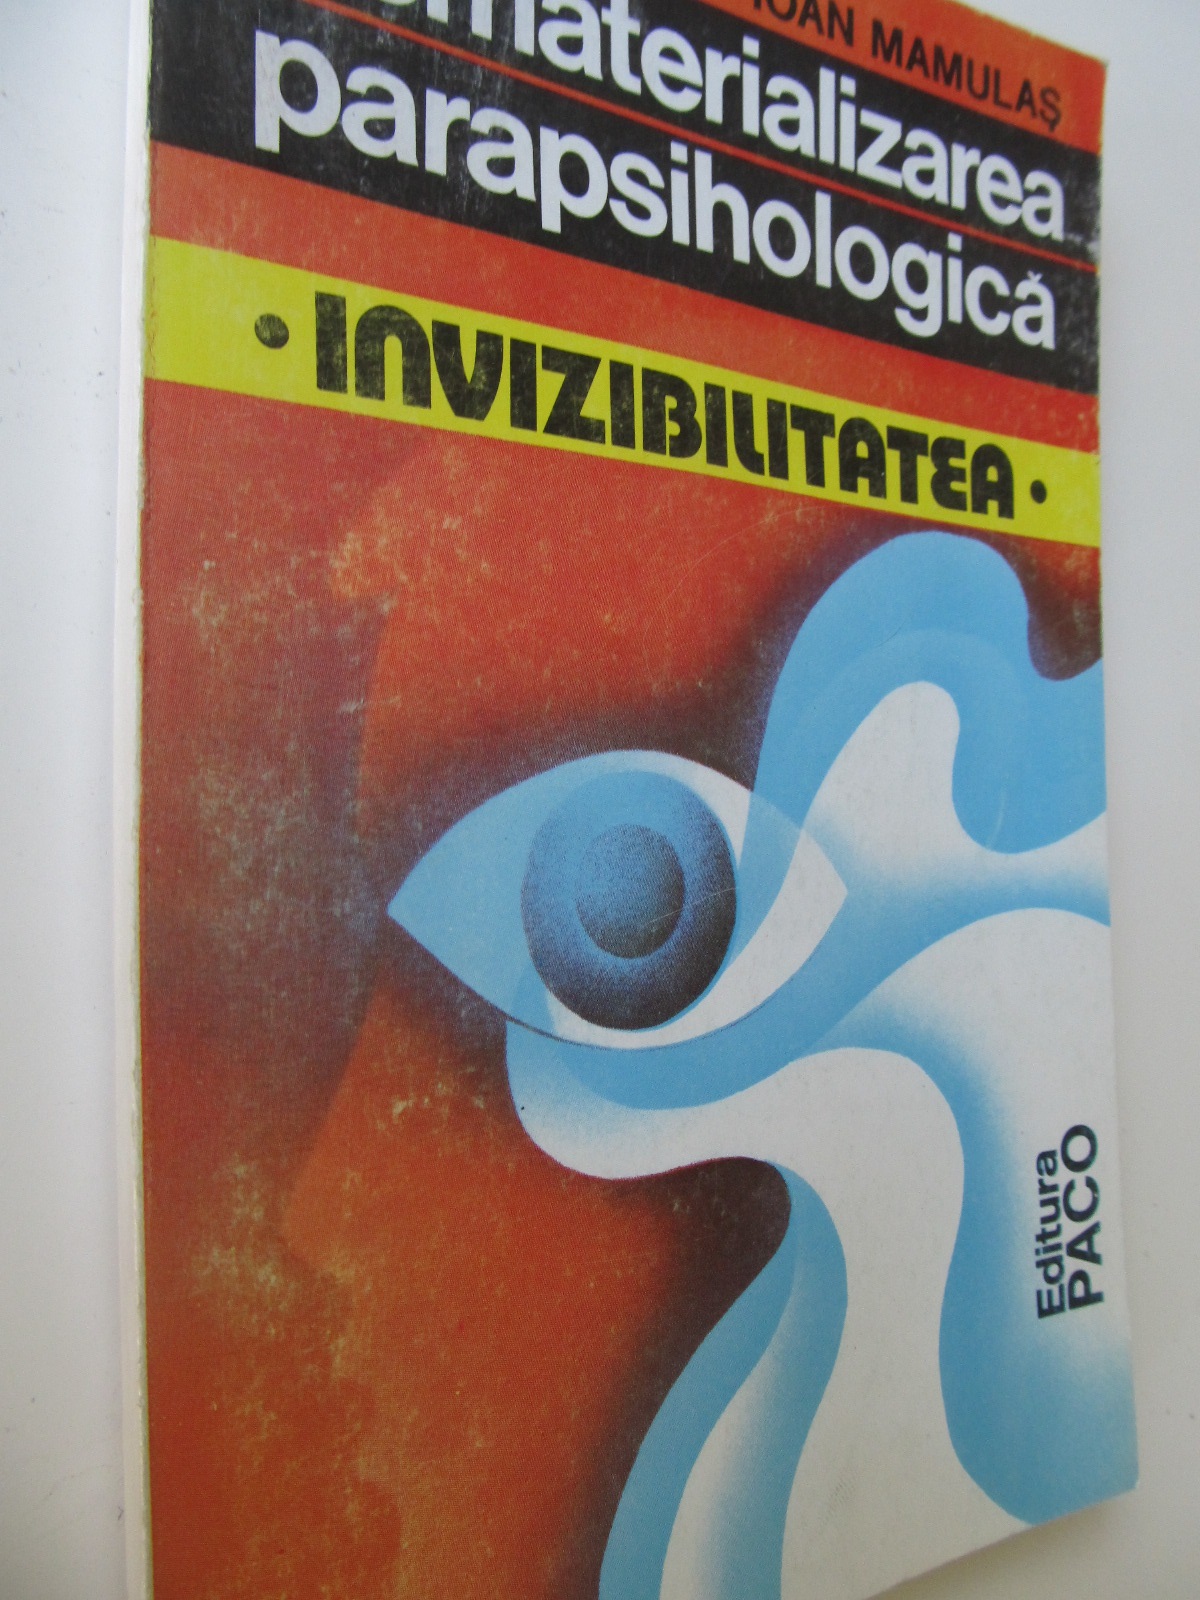 Dematerializarea parapsihologica - Invizibilitatea - Corin Bianu , Ioan Mamalus | Detalii carte